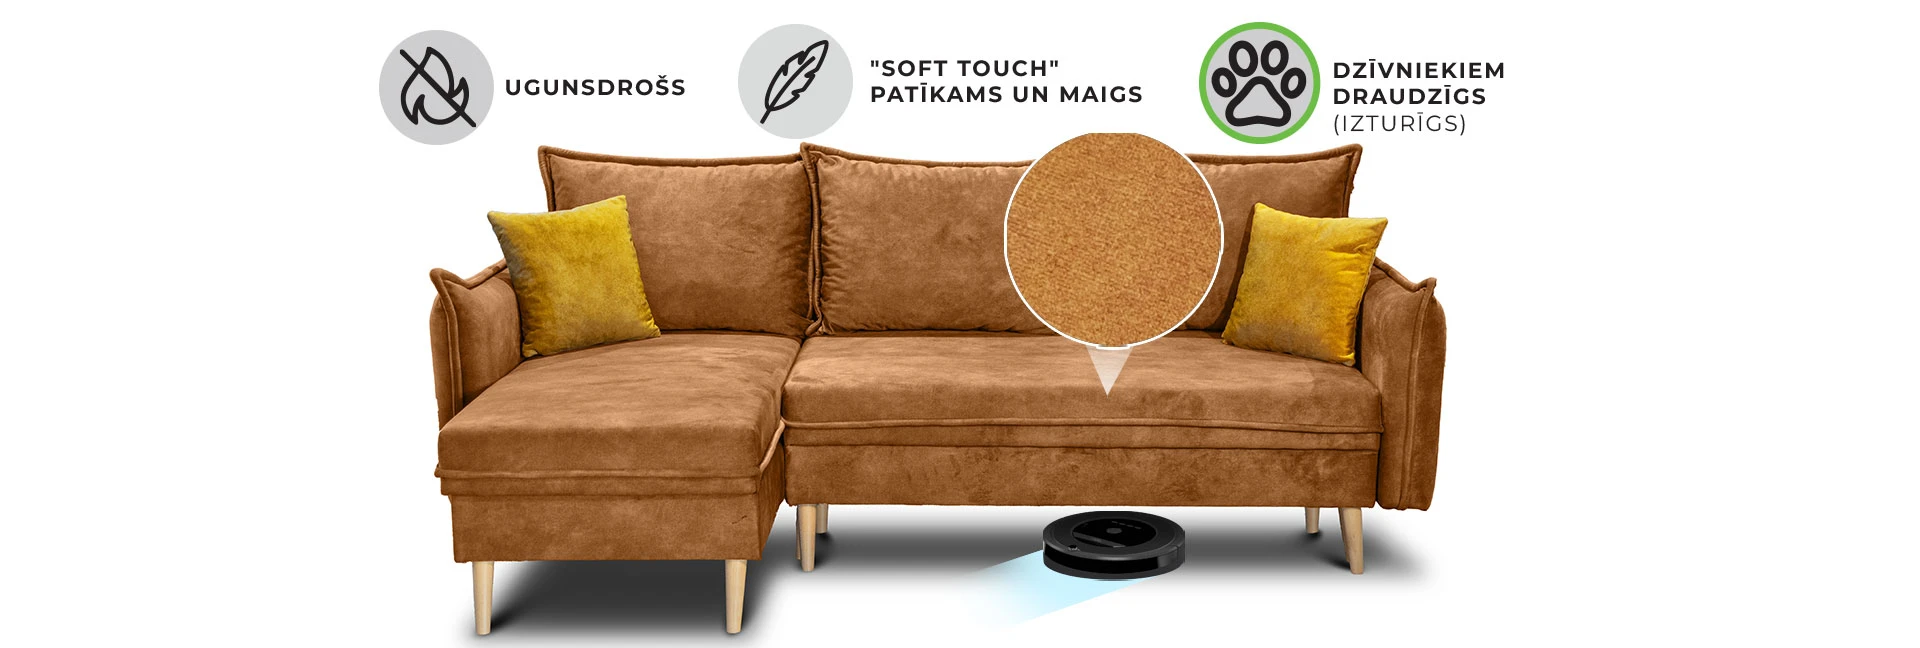 Dīvāns - Gulta Zelta cena dīvāni un dīvāni | Dīvāni | dund.lv